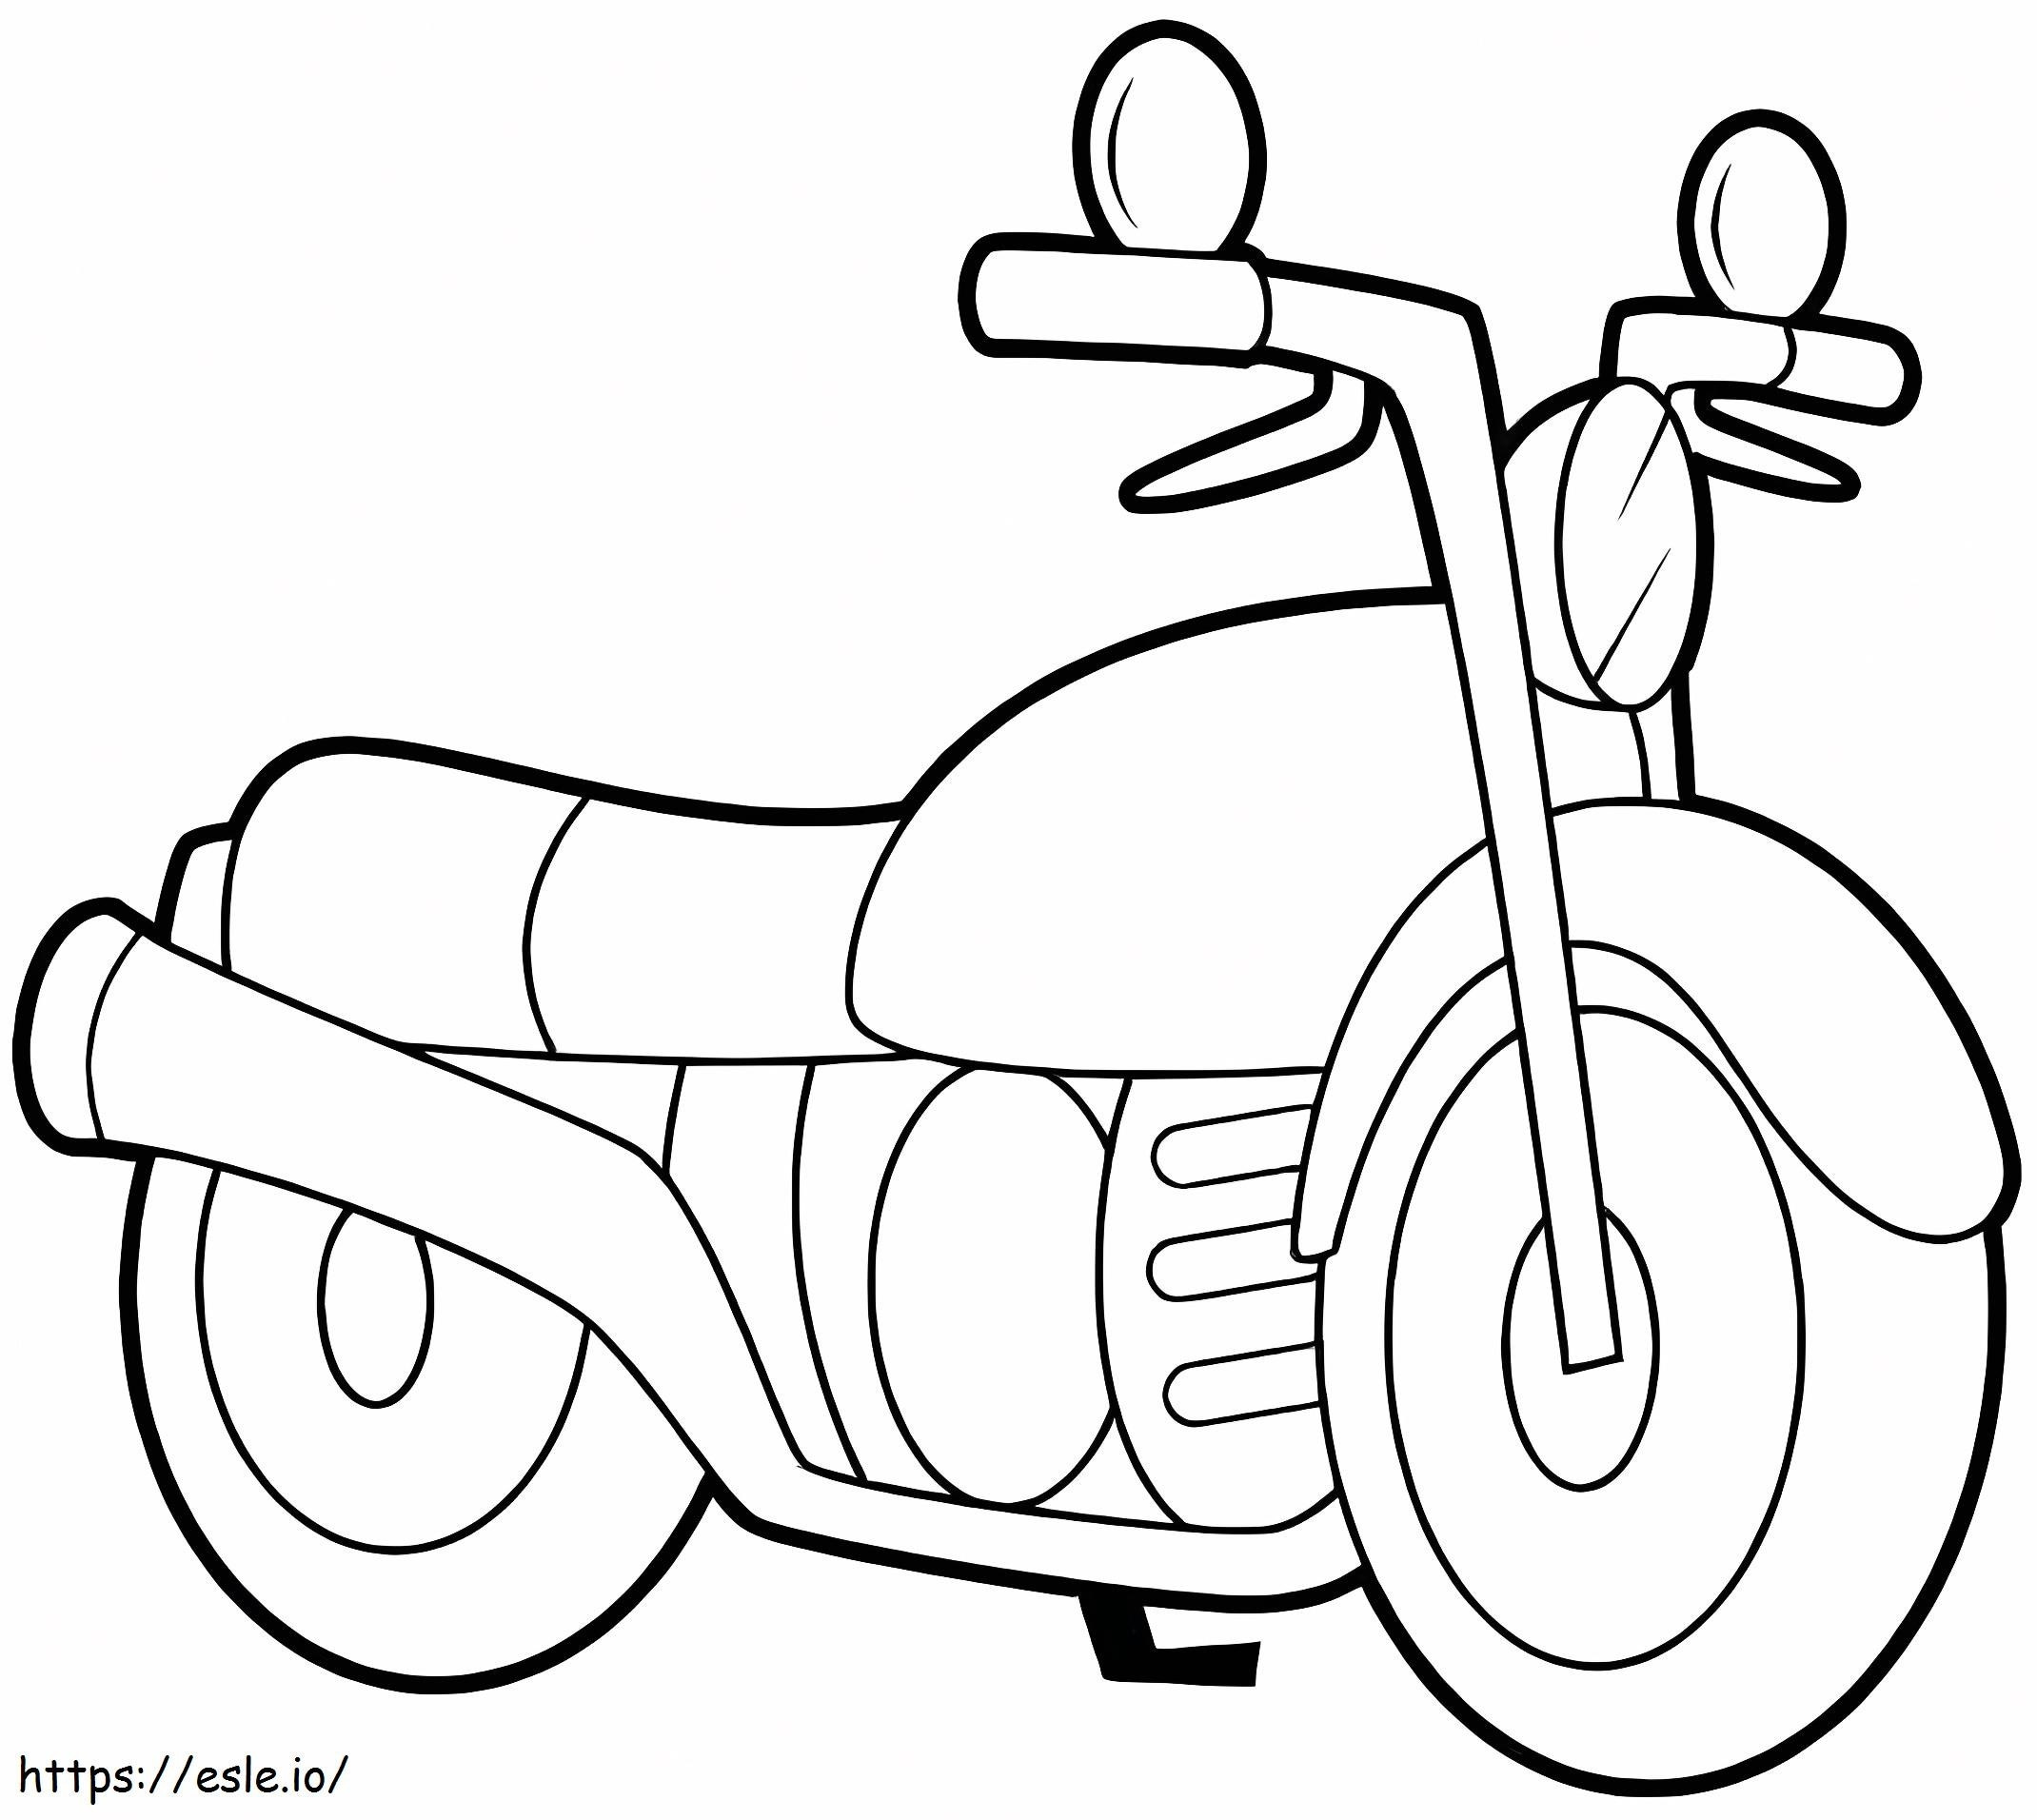 Ein normales Motorrad ausmalbilder